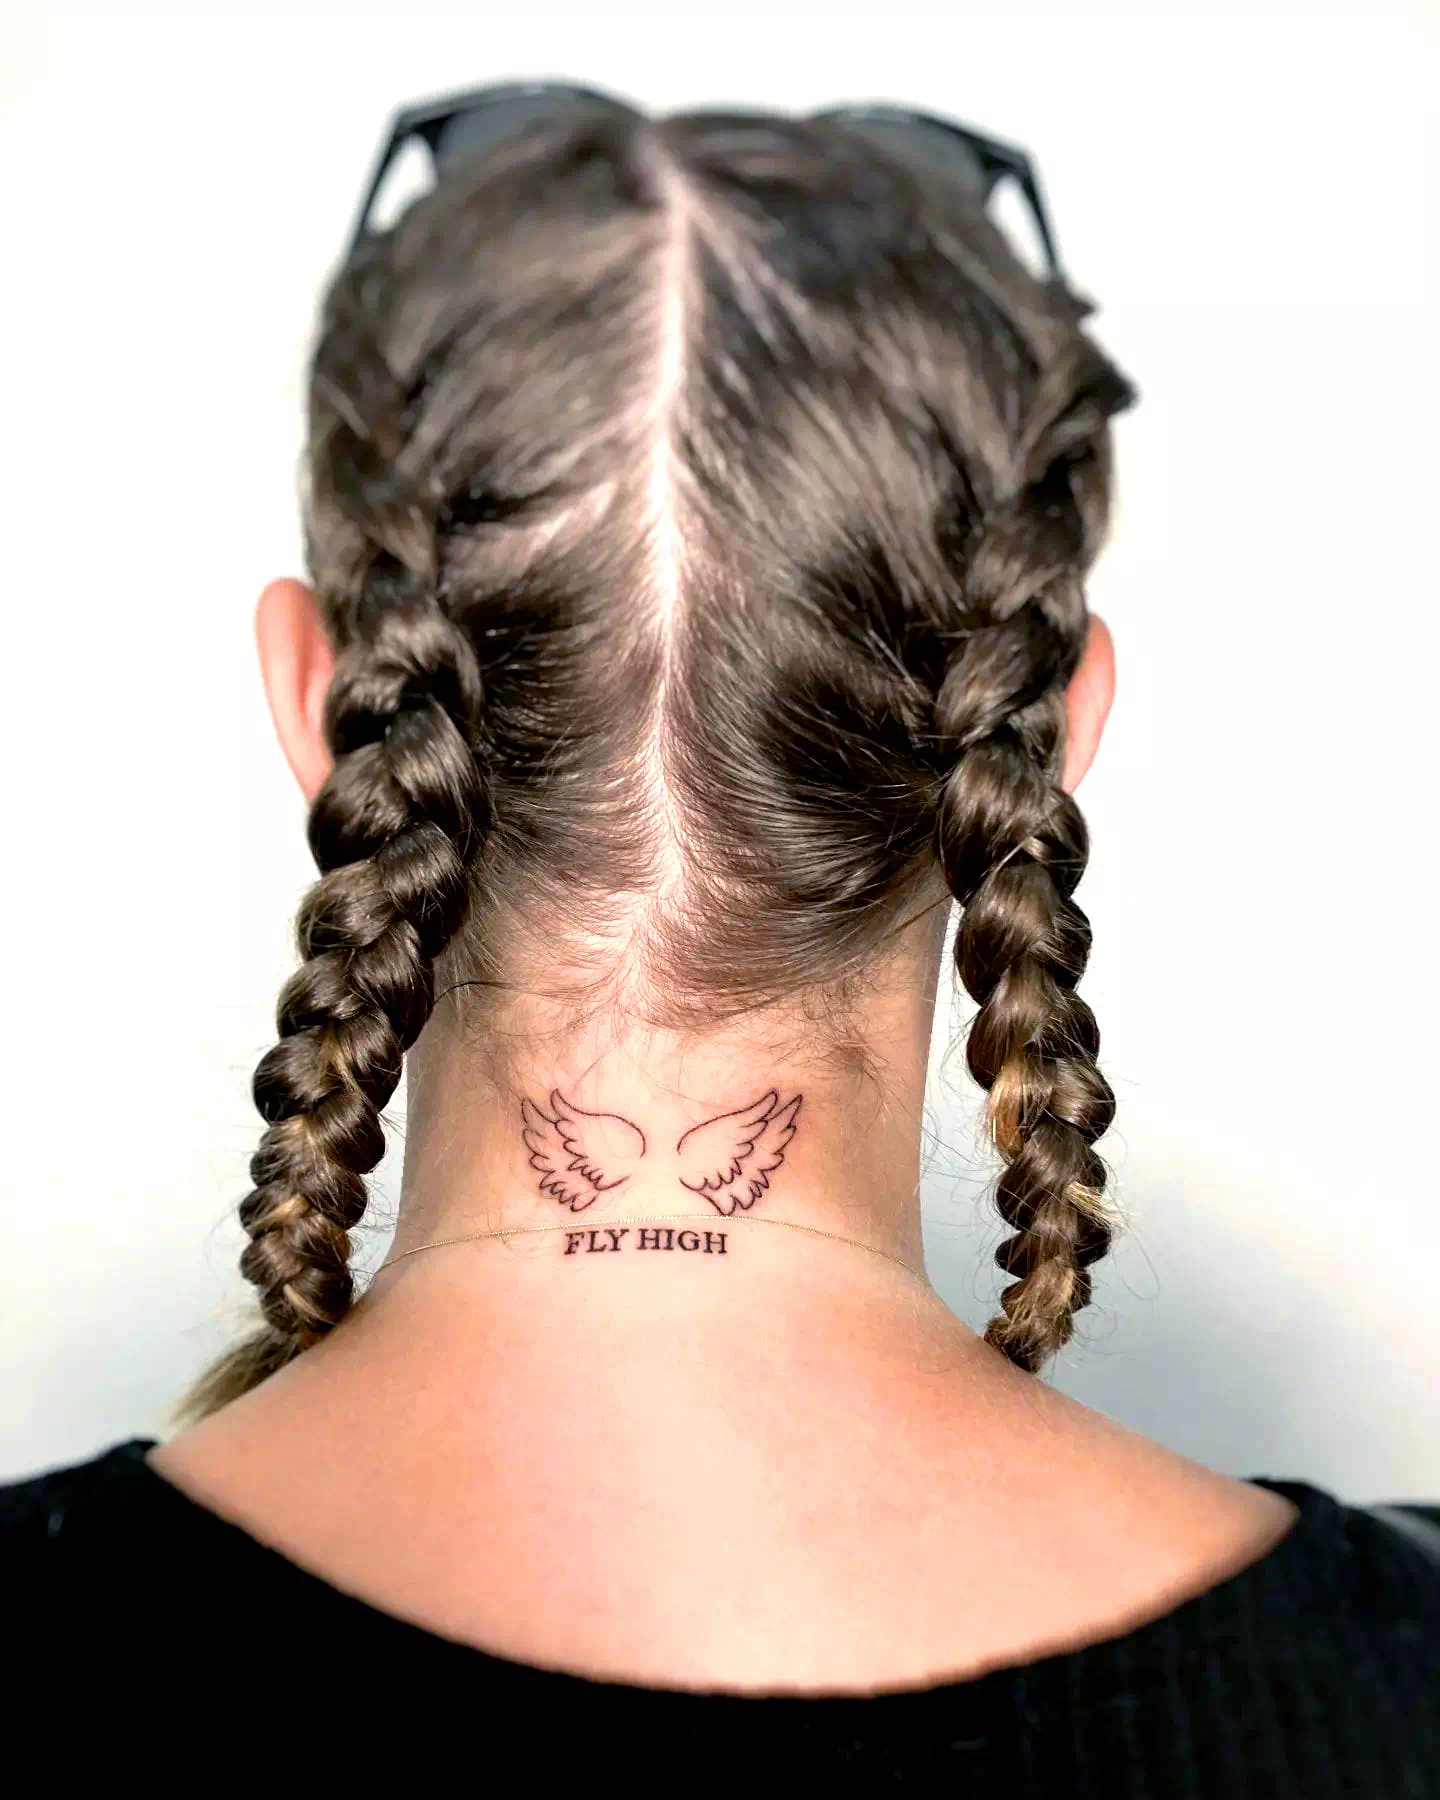 Flügel Hals Tattoo 4